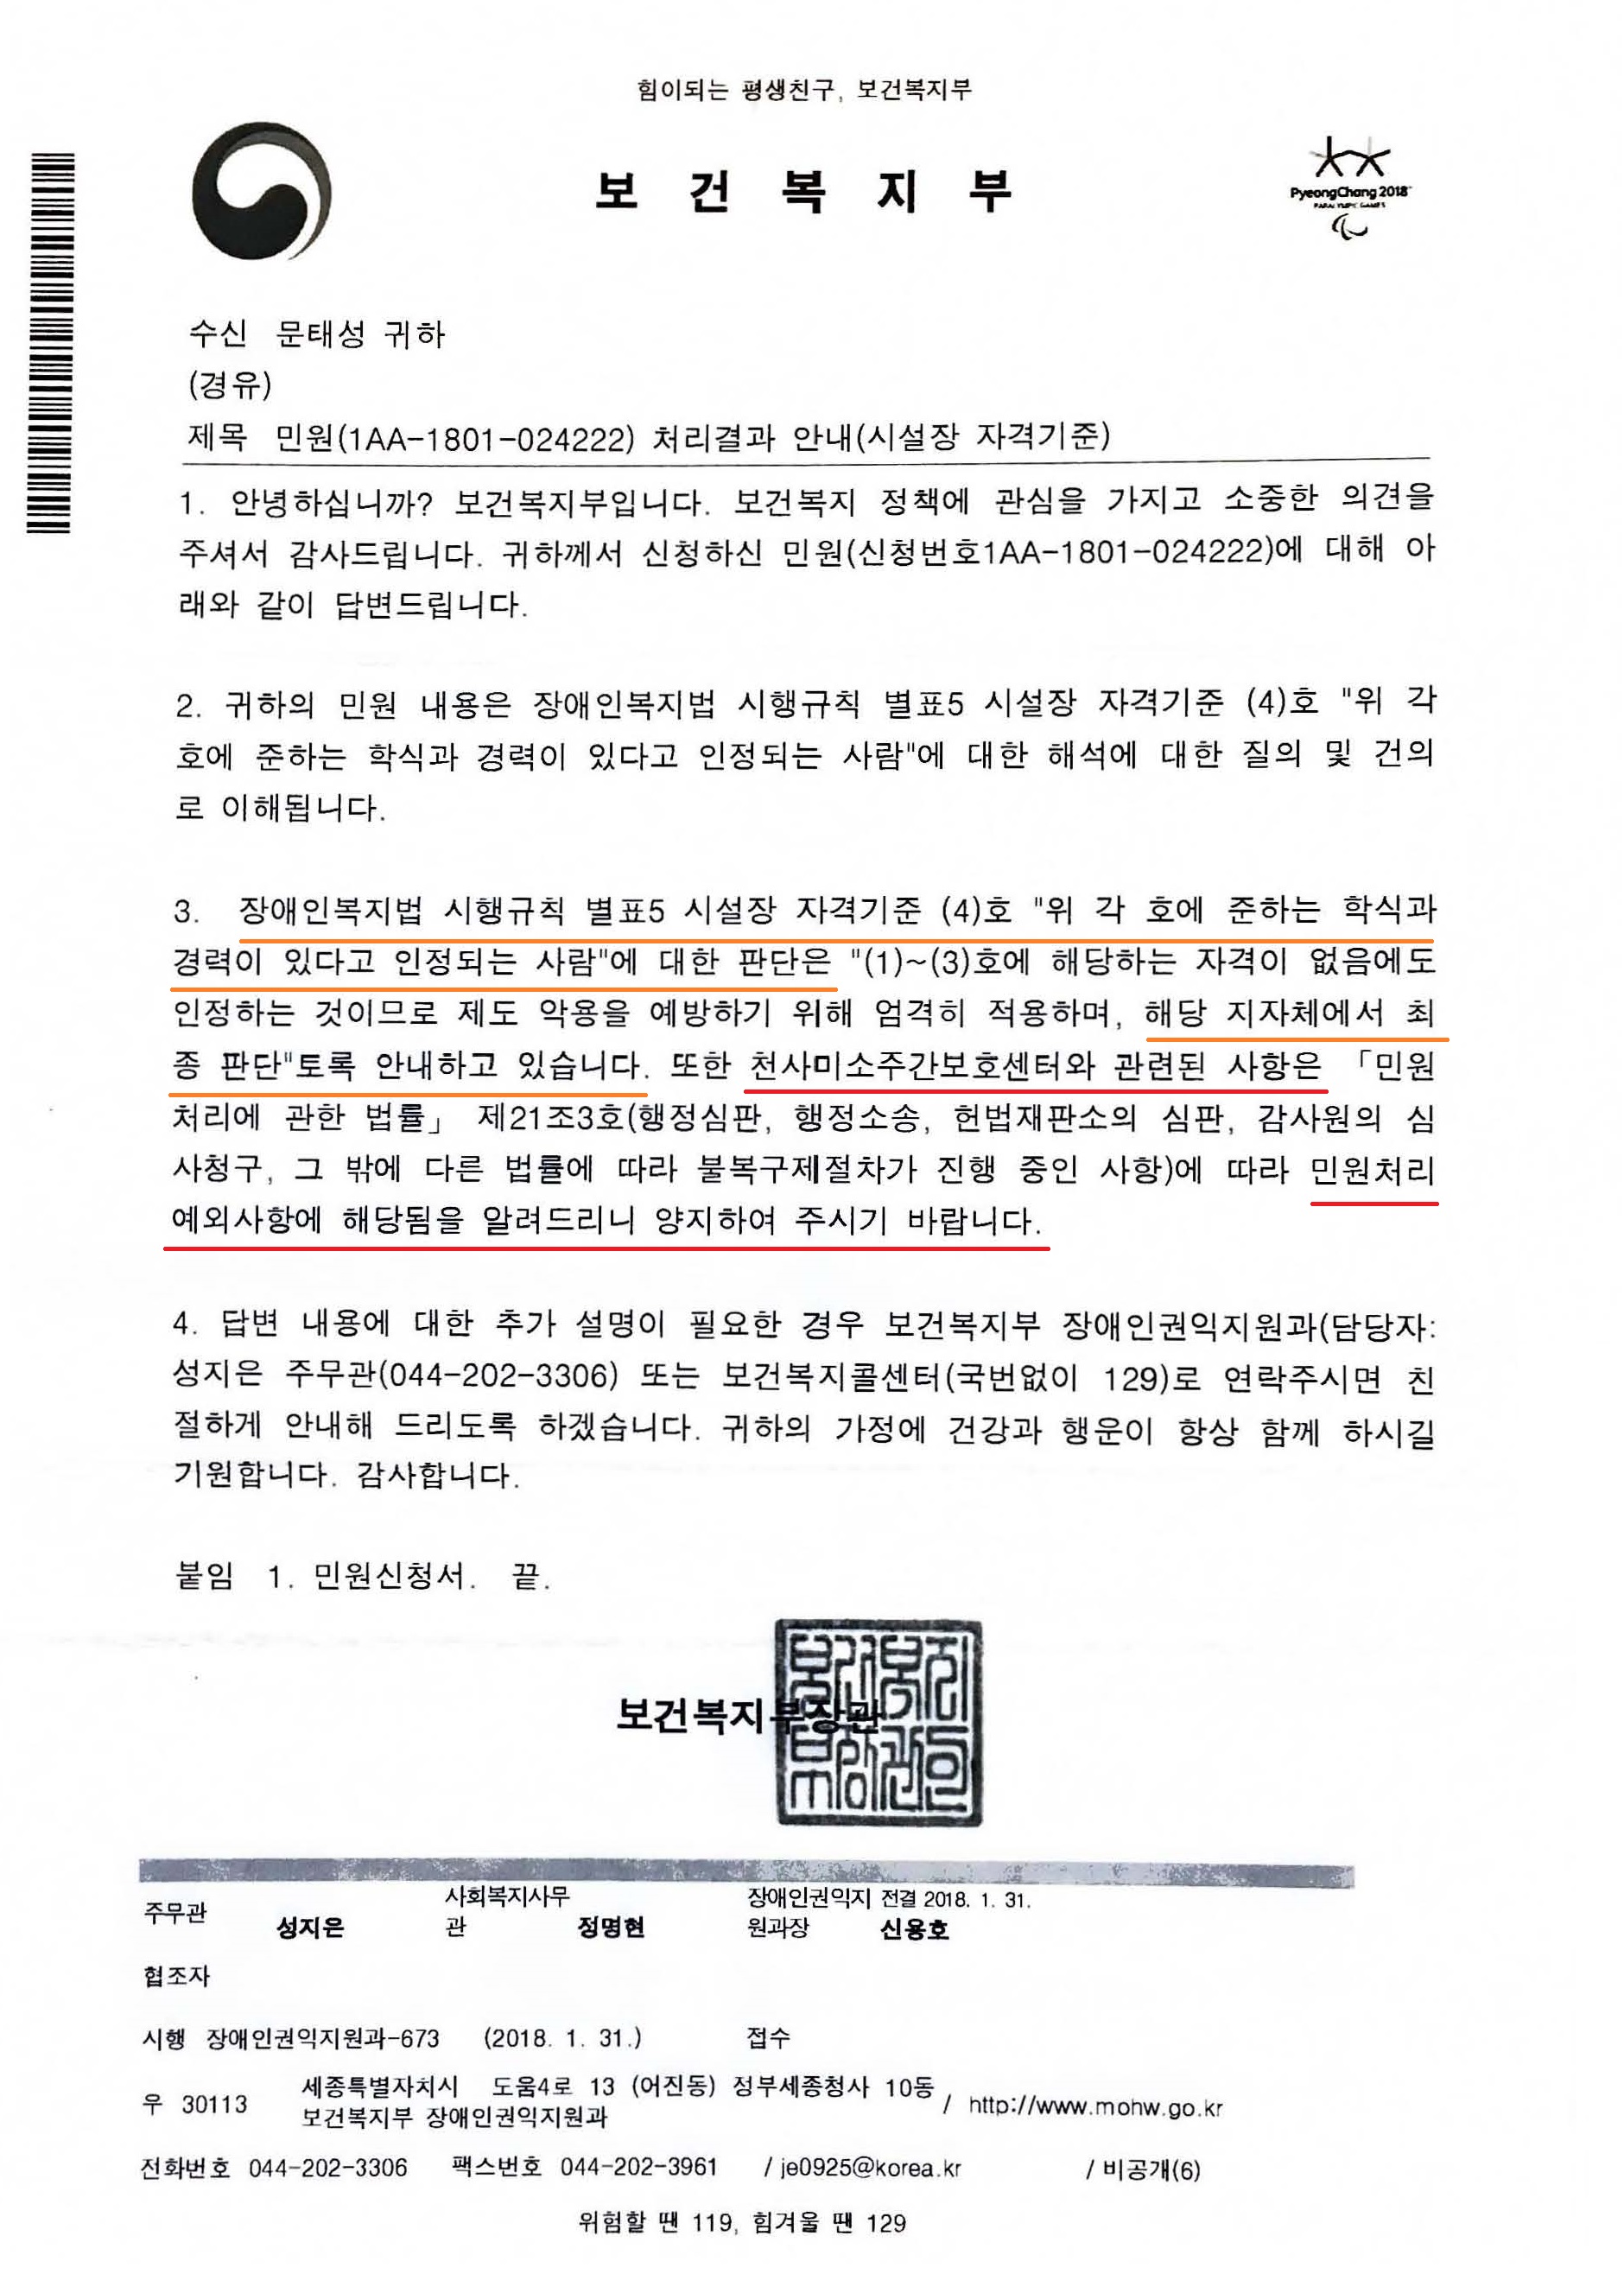 수정_보건복지부 장애인권익지원과-673(2018.1.31)_시설장 자격기준(4).jpg